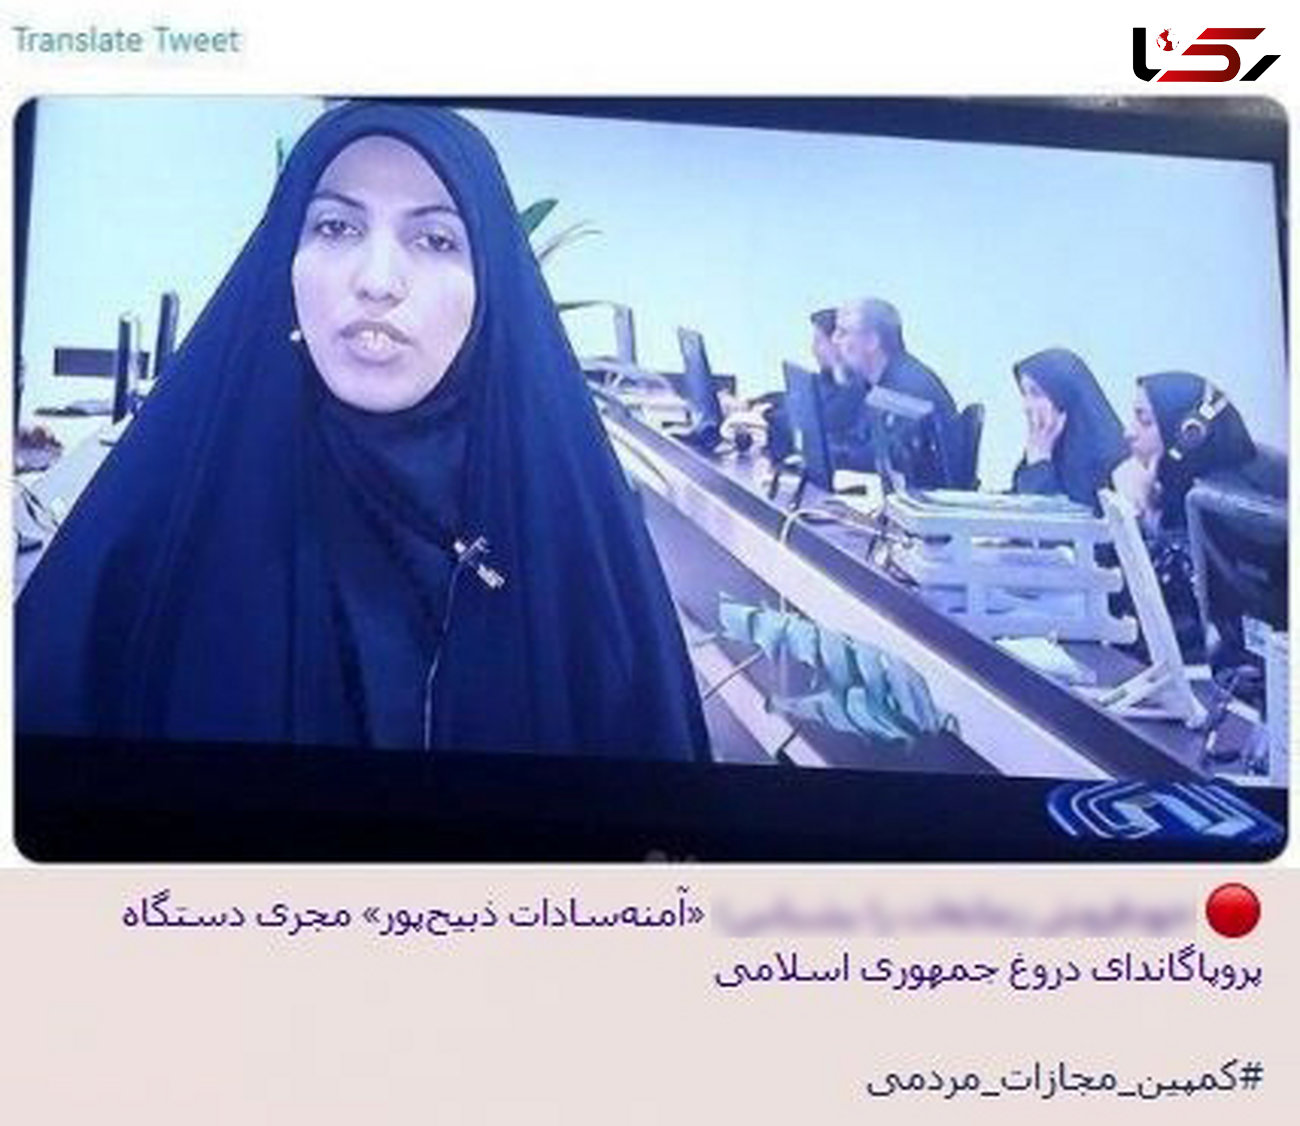 جیغ بنفش «ضدانقلاب» از گزارش روشنگرانه رسانه ملی/ «آمد نیوز» این بار خانم خبرنگار را نشانه گرفت + عکس 